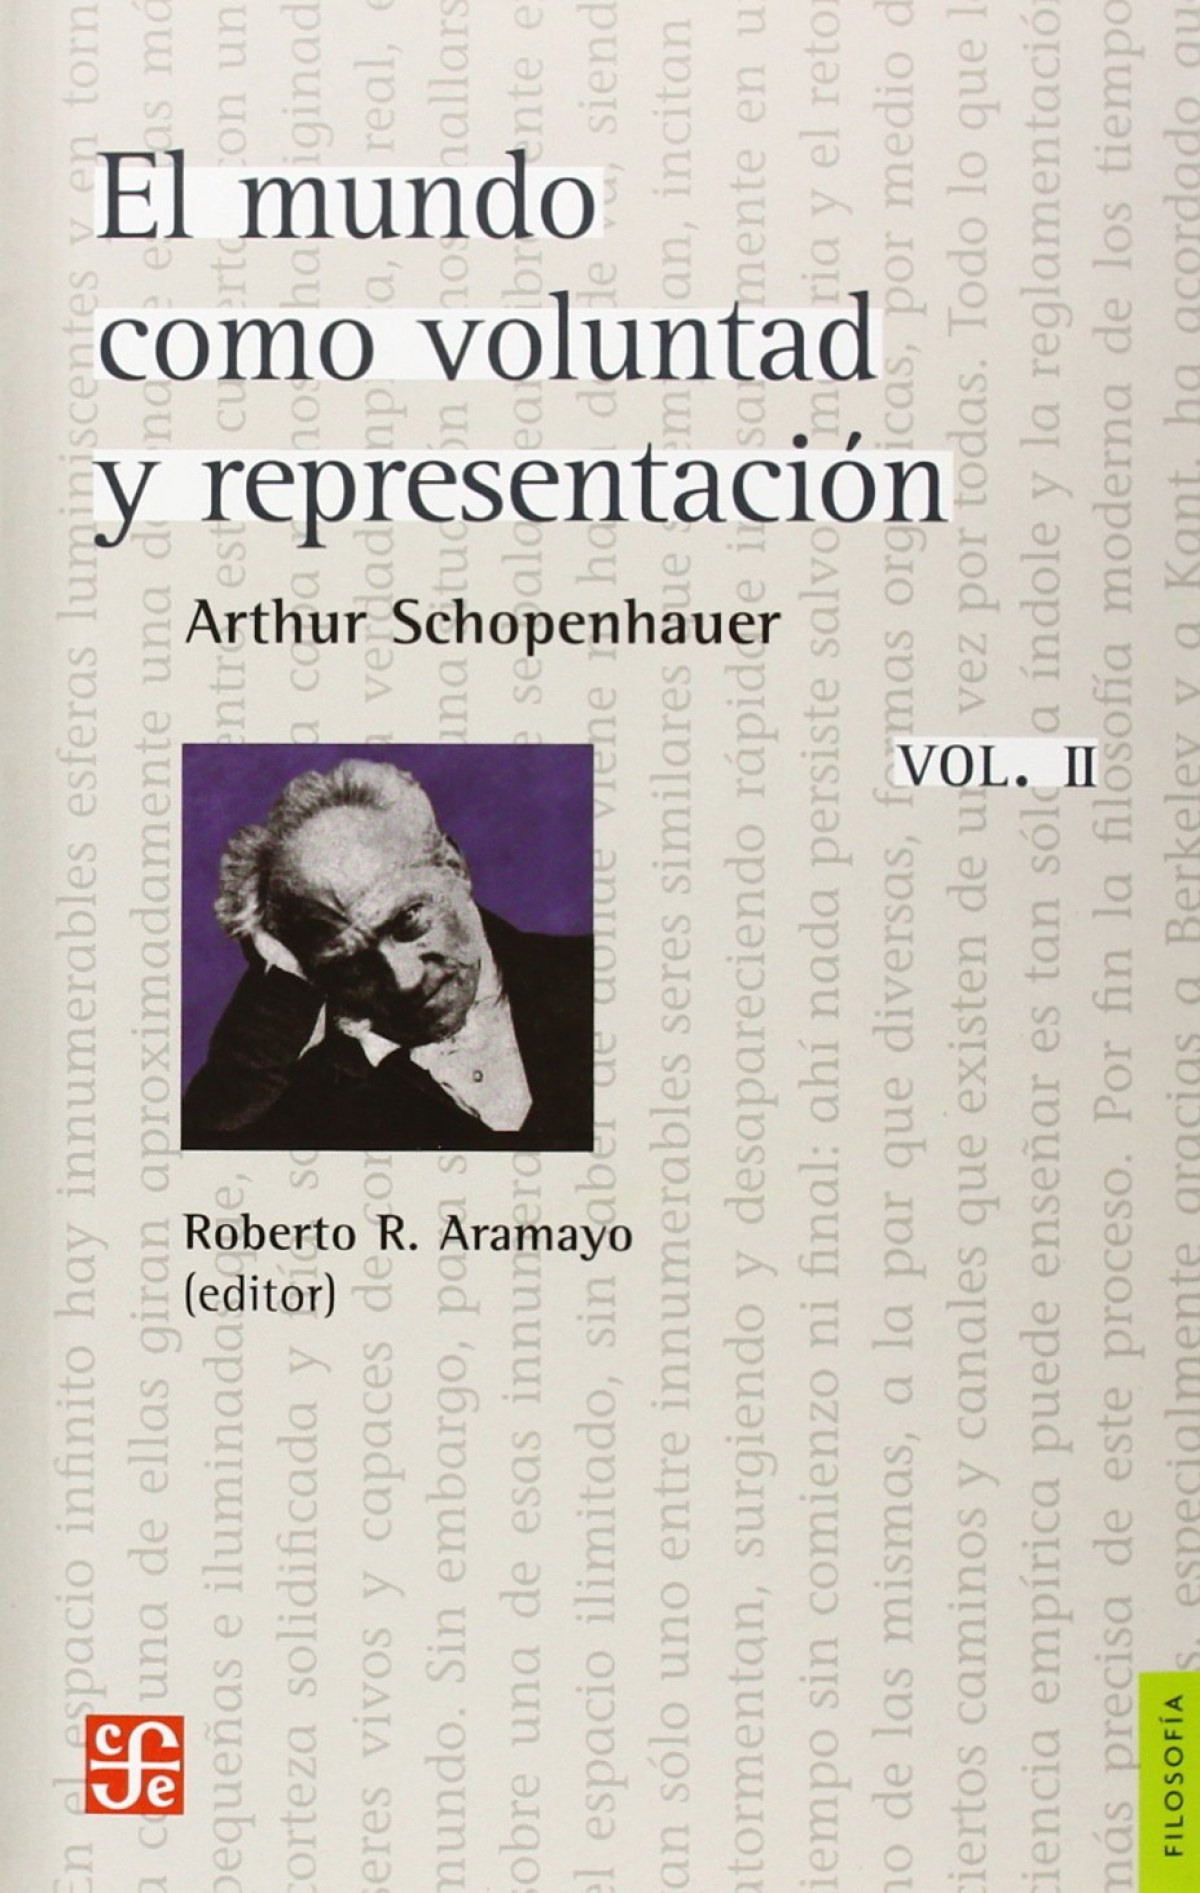 El mundo como voluntad y representación, vol. II (complementos) - Schopenhauer, Arthur